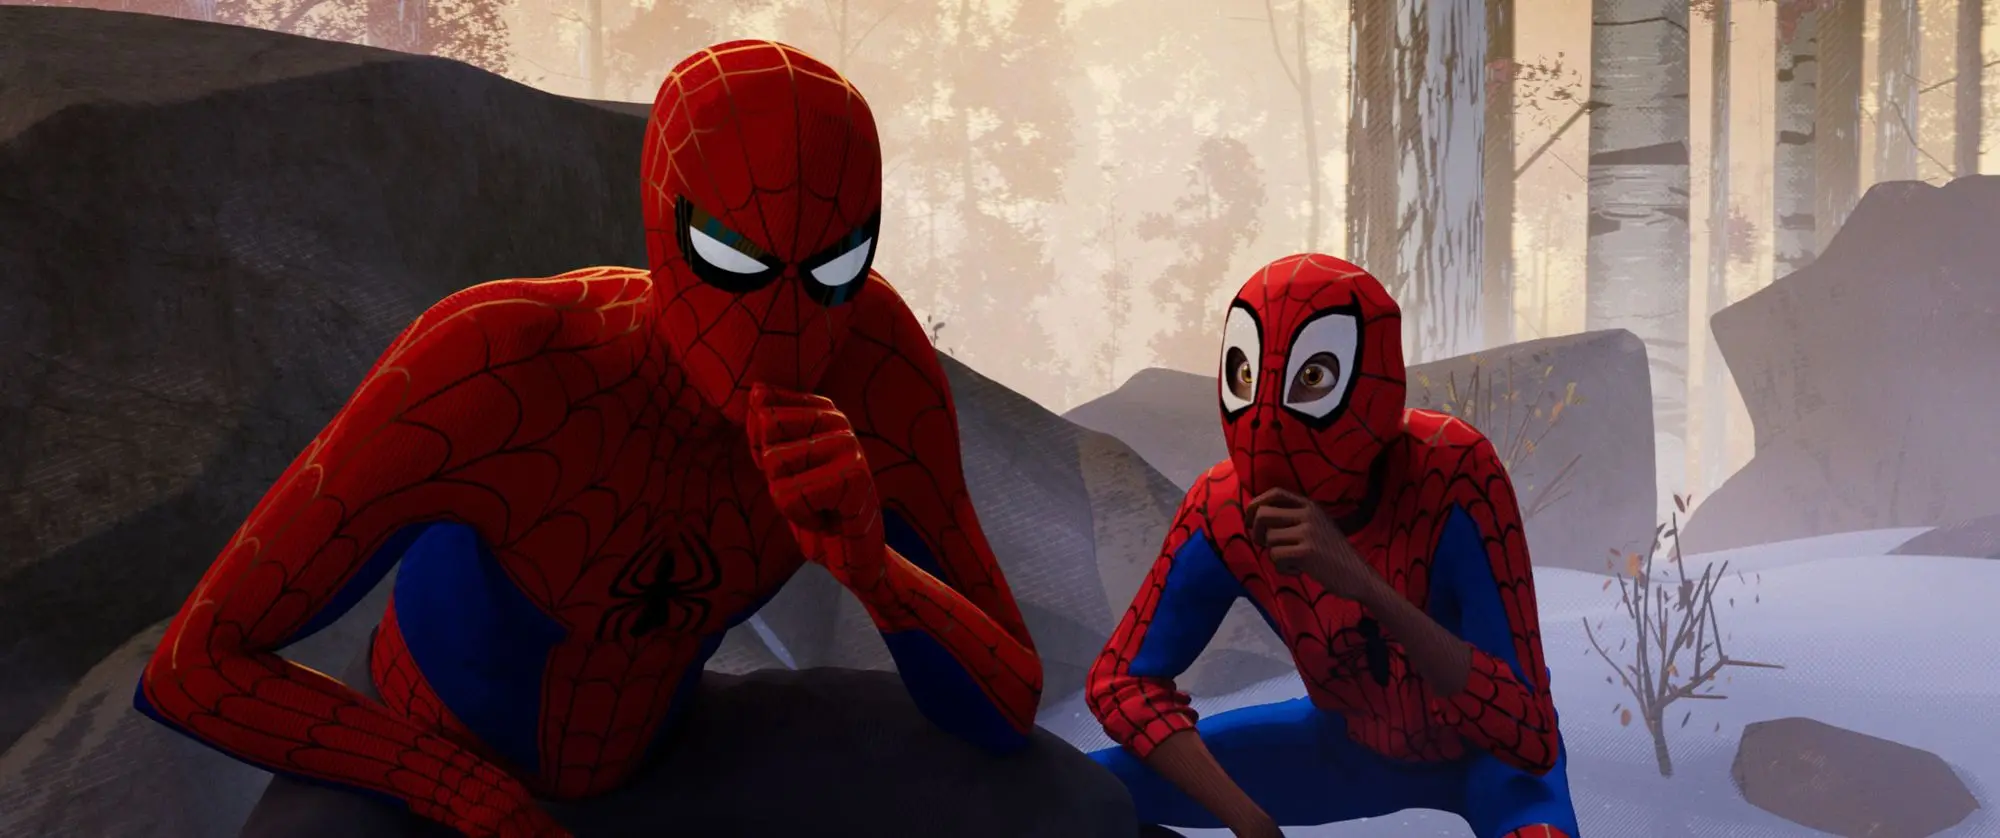 Recenze: Spider-Man: Paralelní světy - nejlepší superhrdinský film letošního roku!